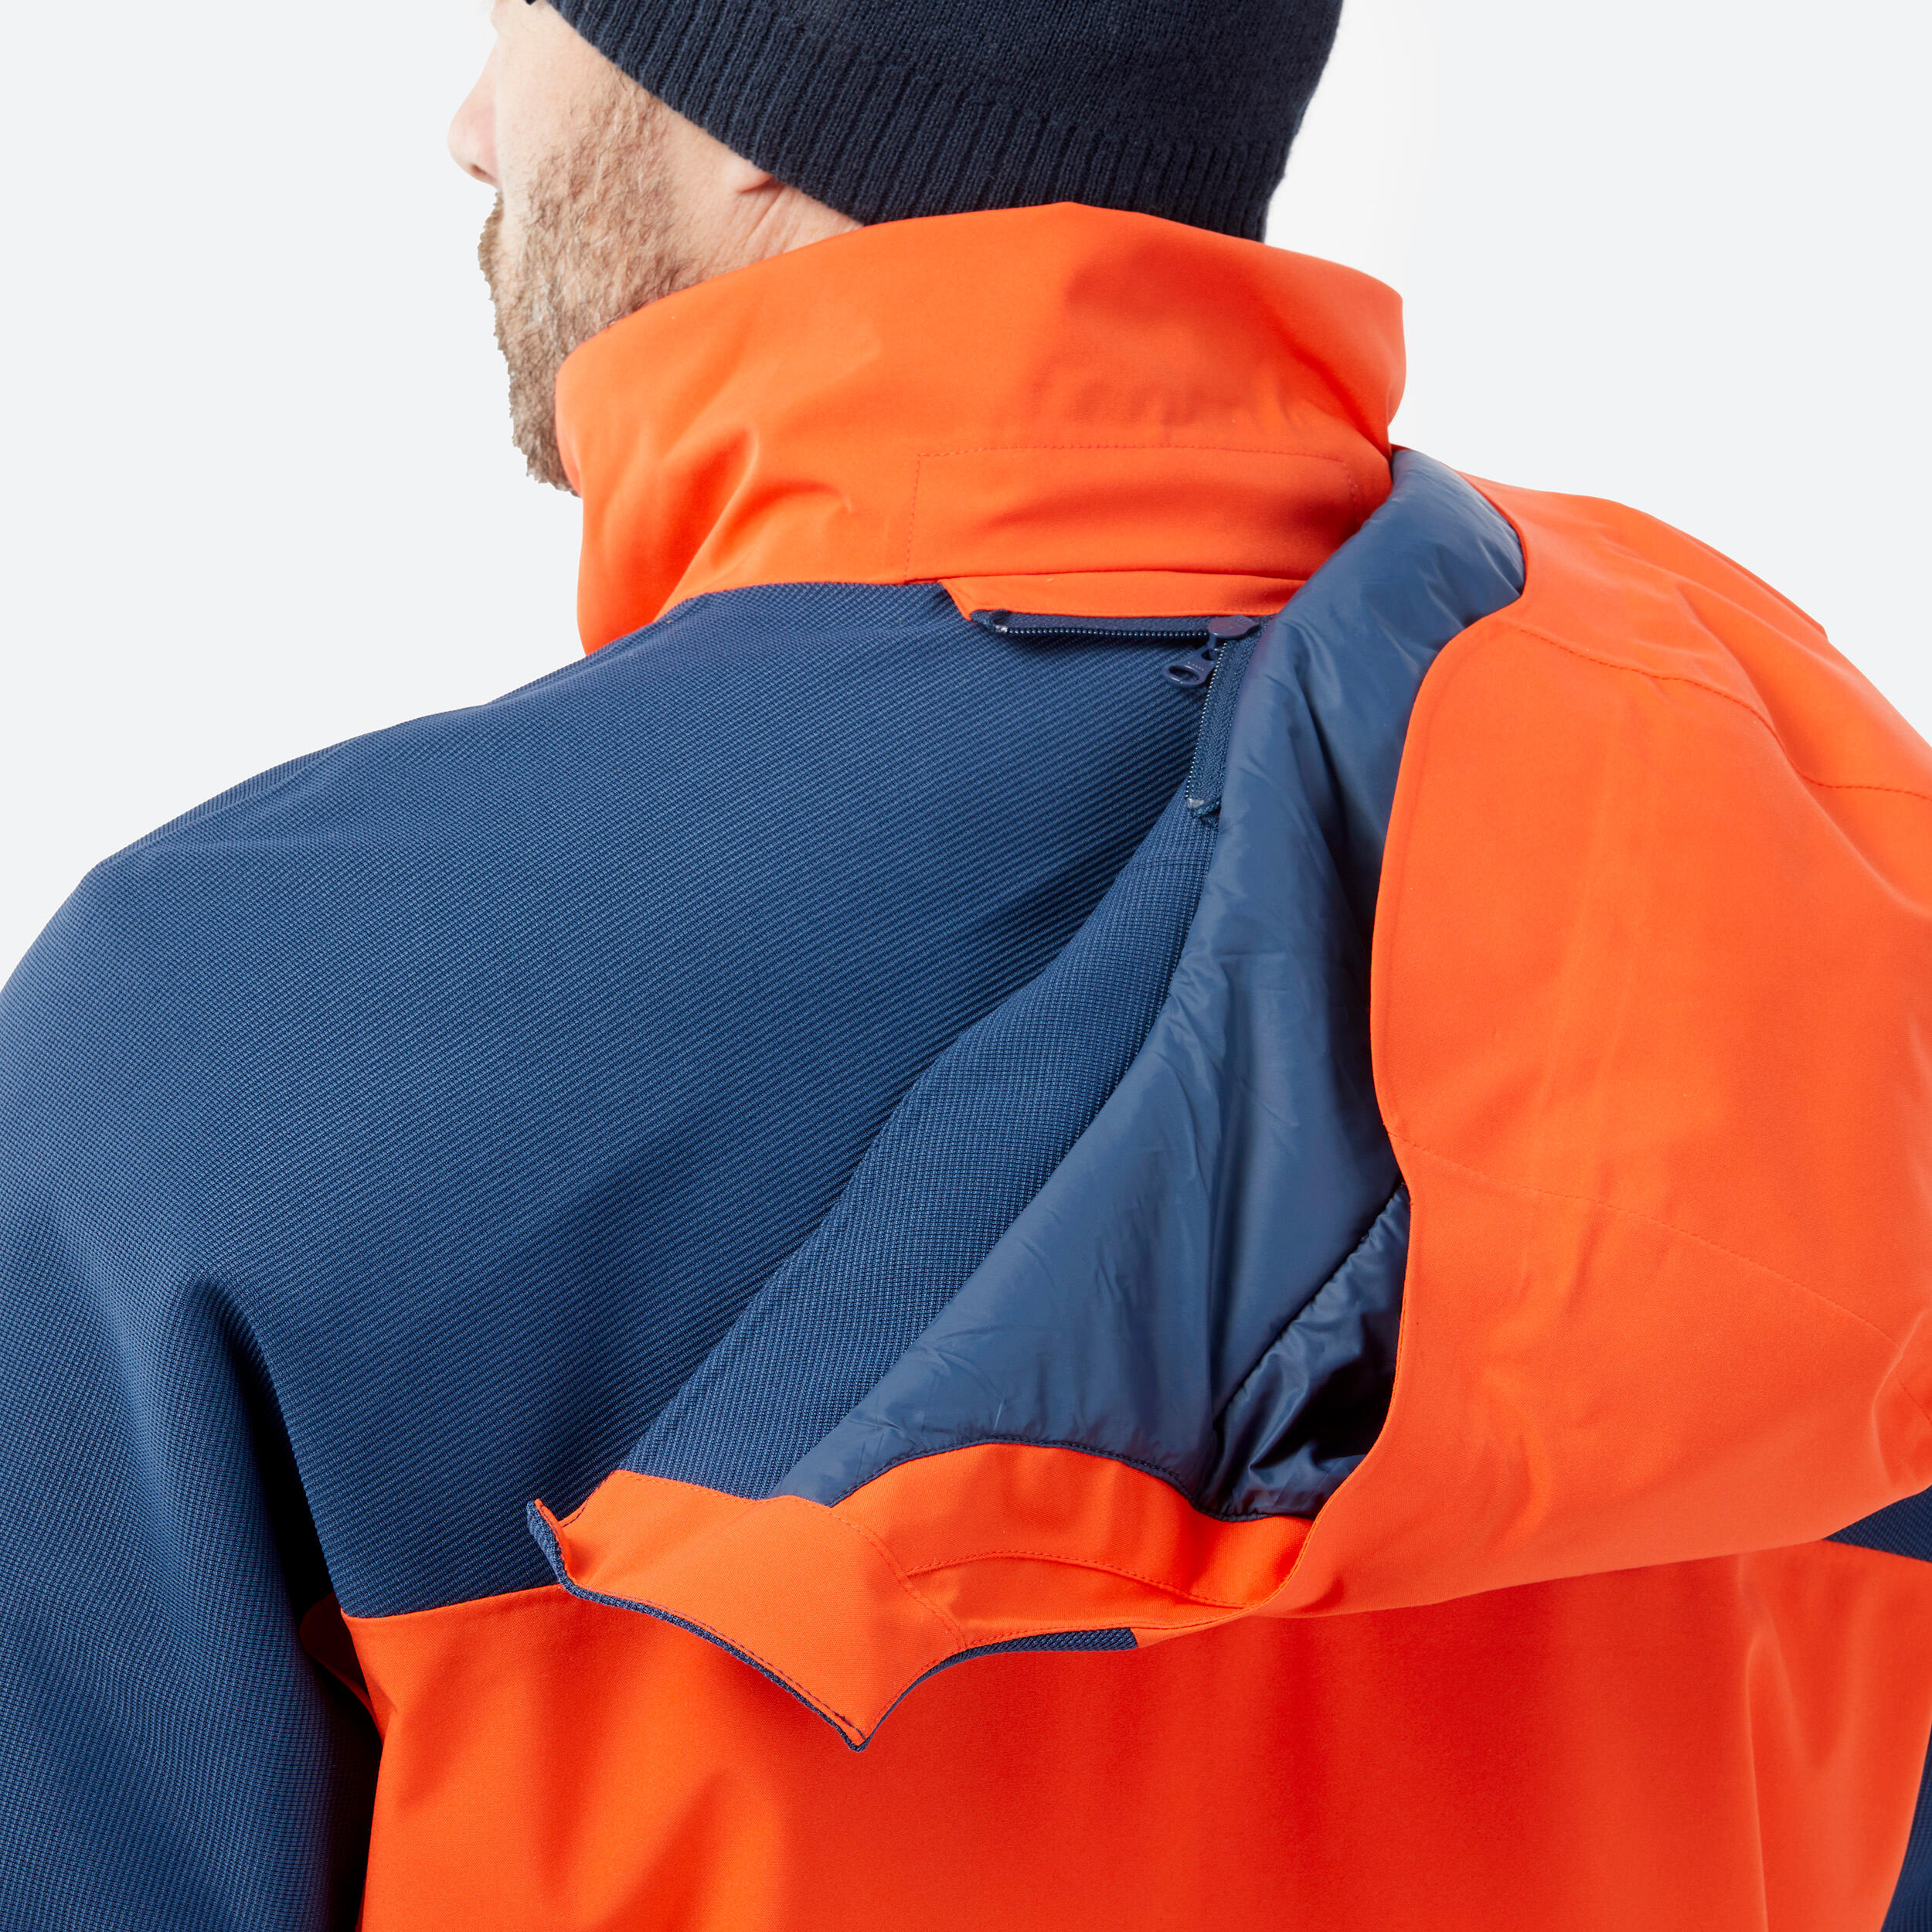 Men’s  All Mountain 500 Ski Jacket - Orange and Blue 12/14